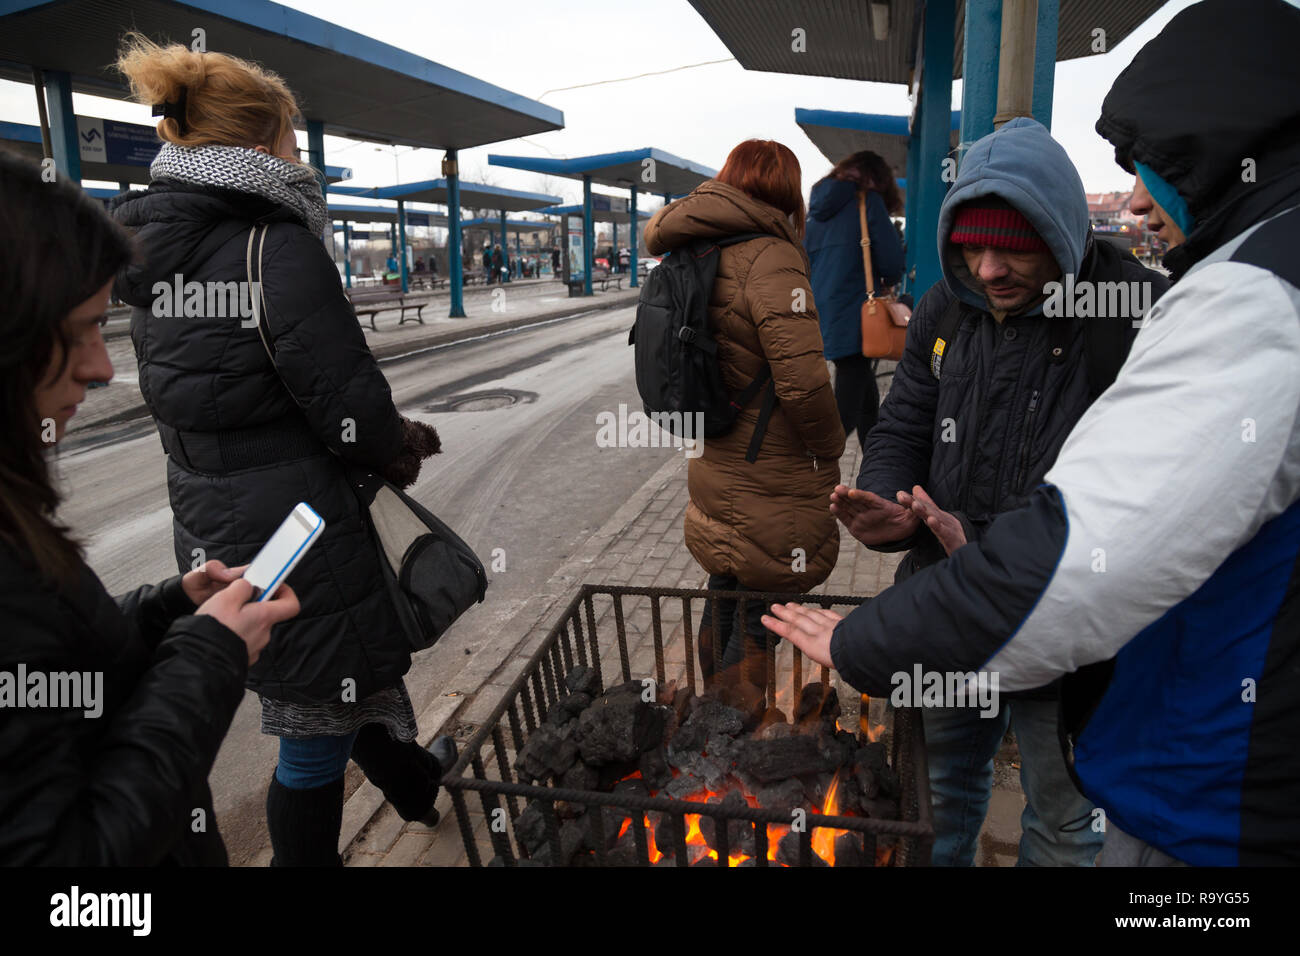 28.02.2018, Bytom (Beuthen), Schlesien, Polen - Menschen an einer Bushaltestelle waermen sich an einem Gefaess mit brennender Steinkohle. 00A180228D14 Stock Photo